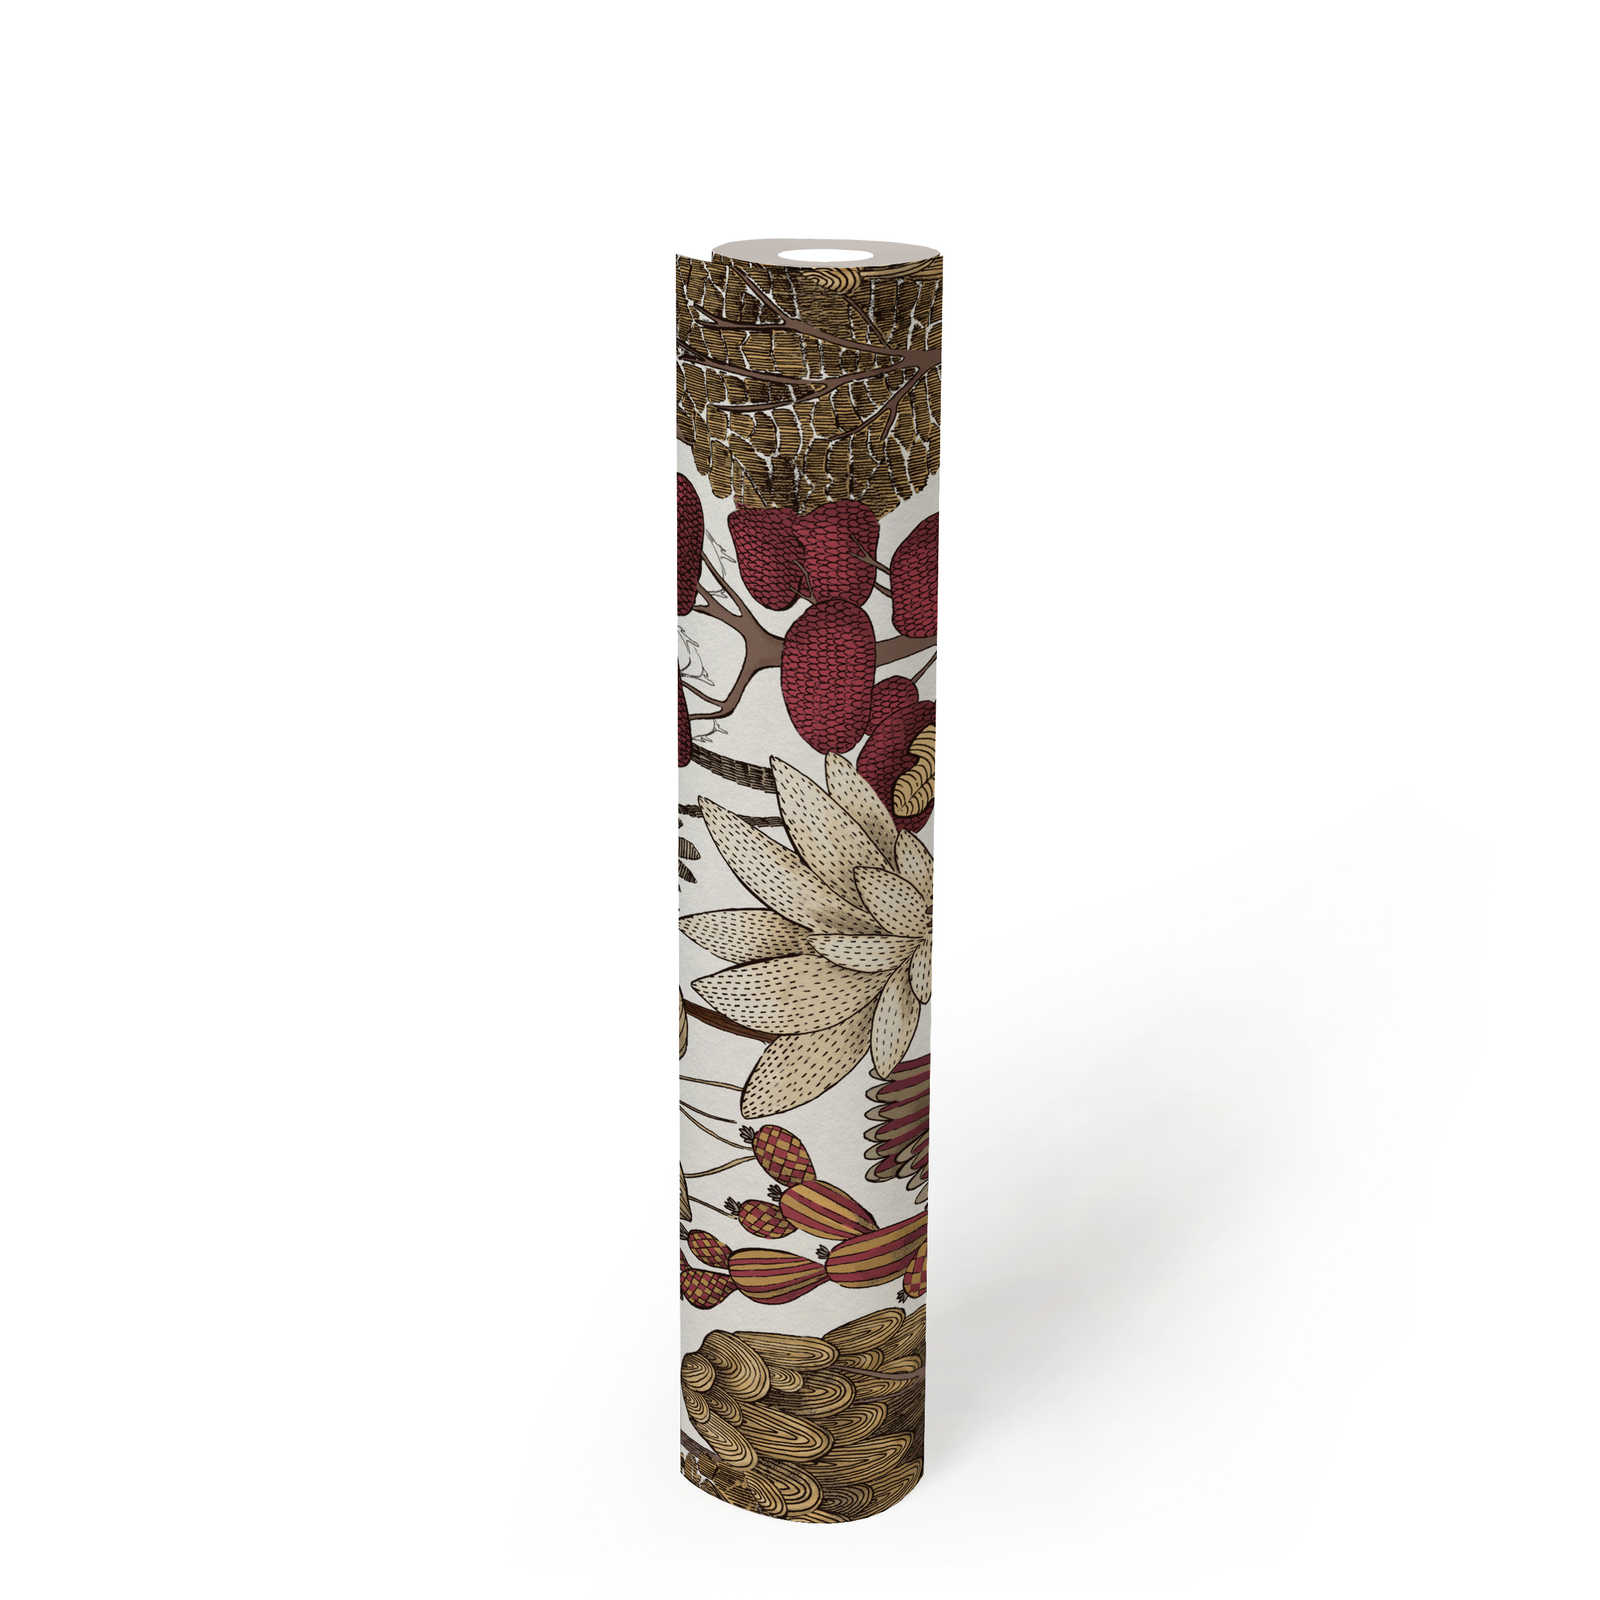             Papier peint moderne floral avec des arbres de style dessin - rouge, beige, marron
        